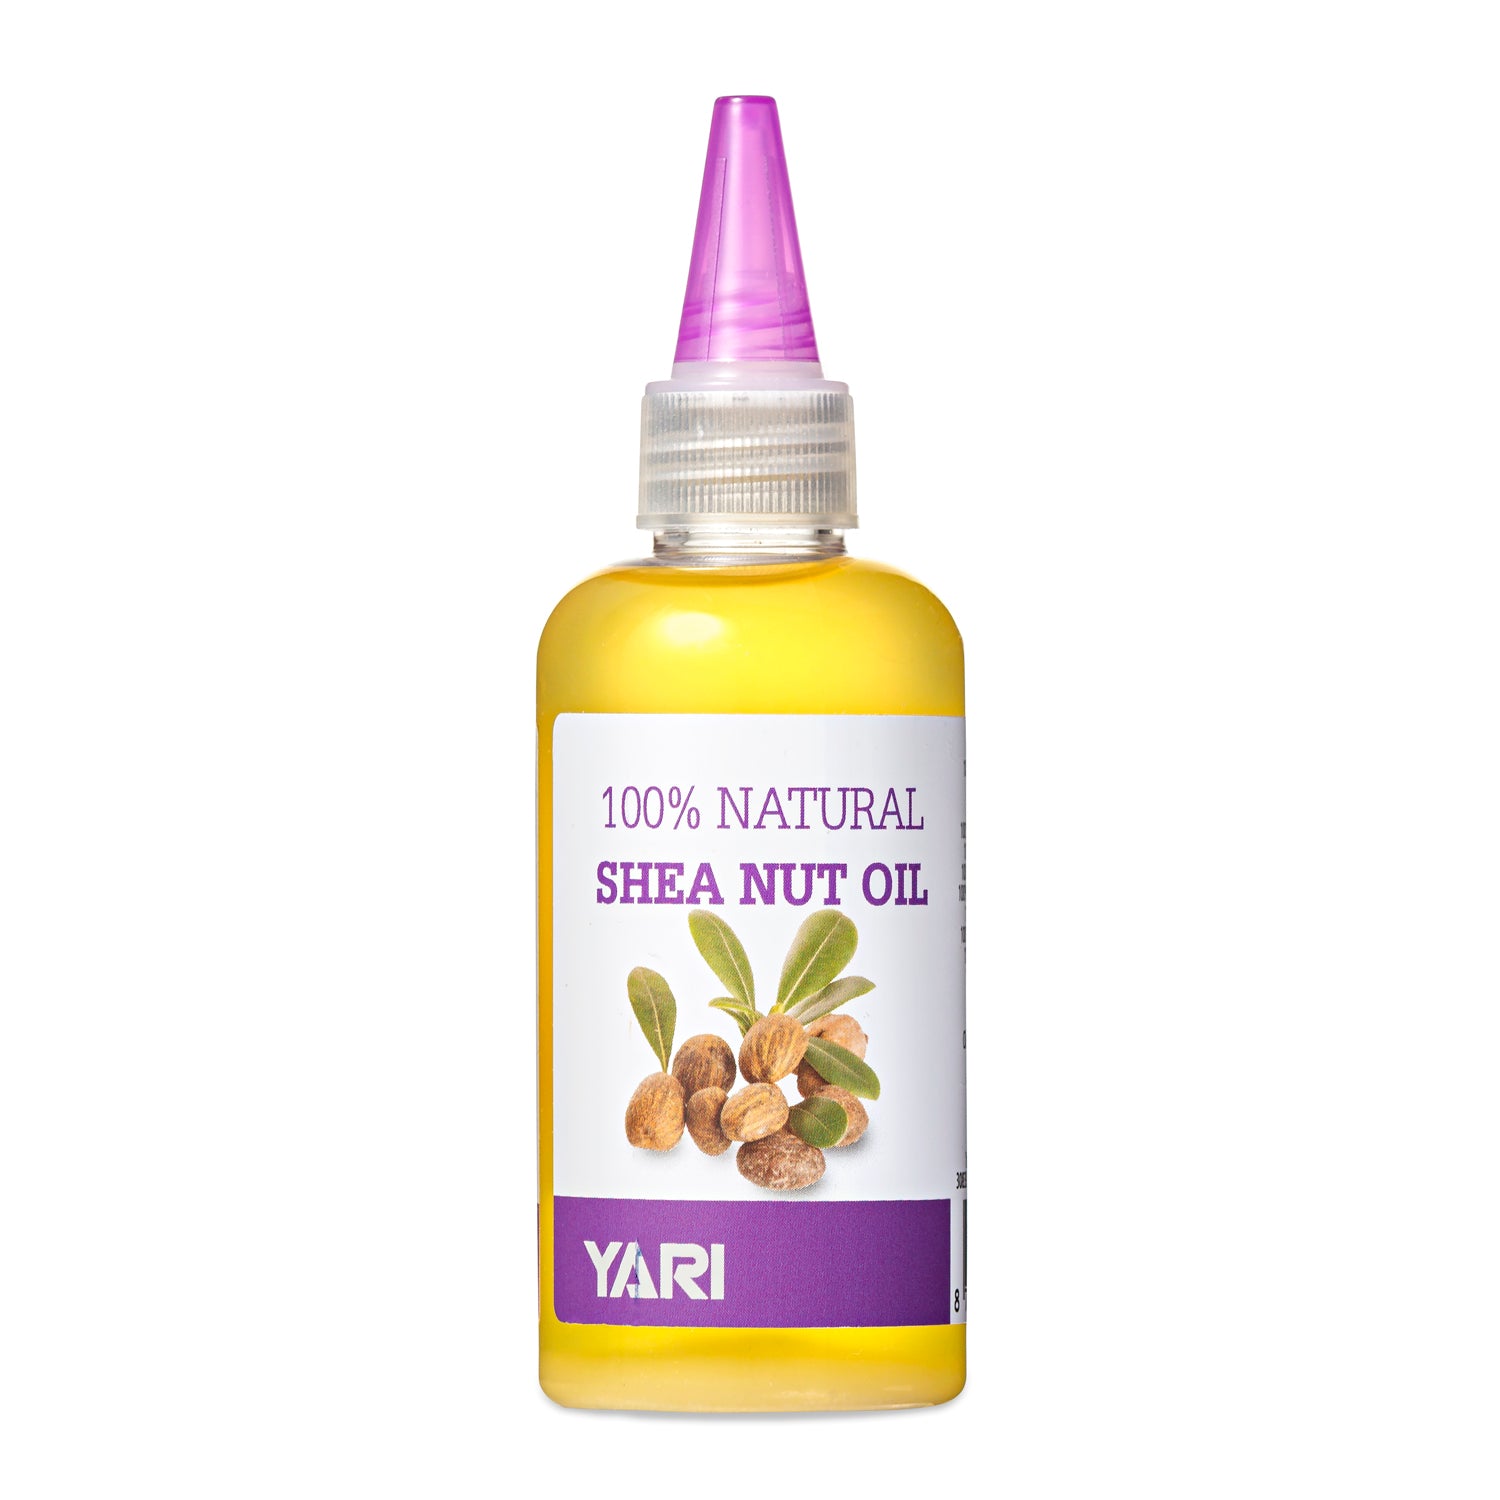 Yari - 100% Natural Huile de Karite/ shea nut oil 105ml